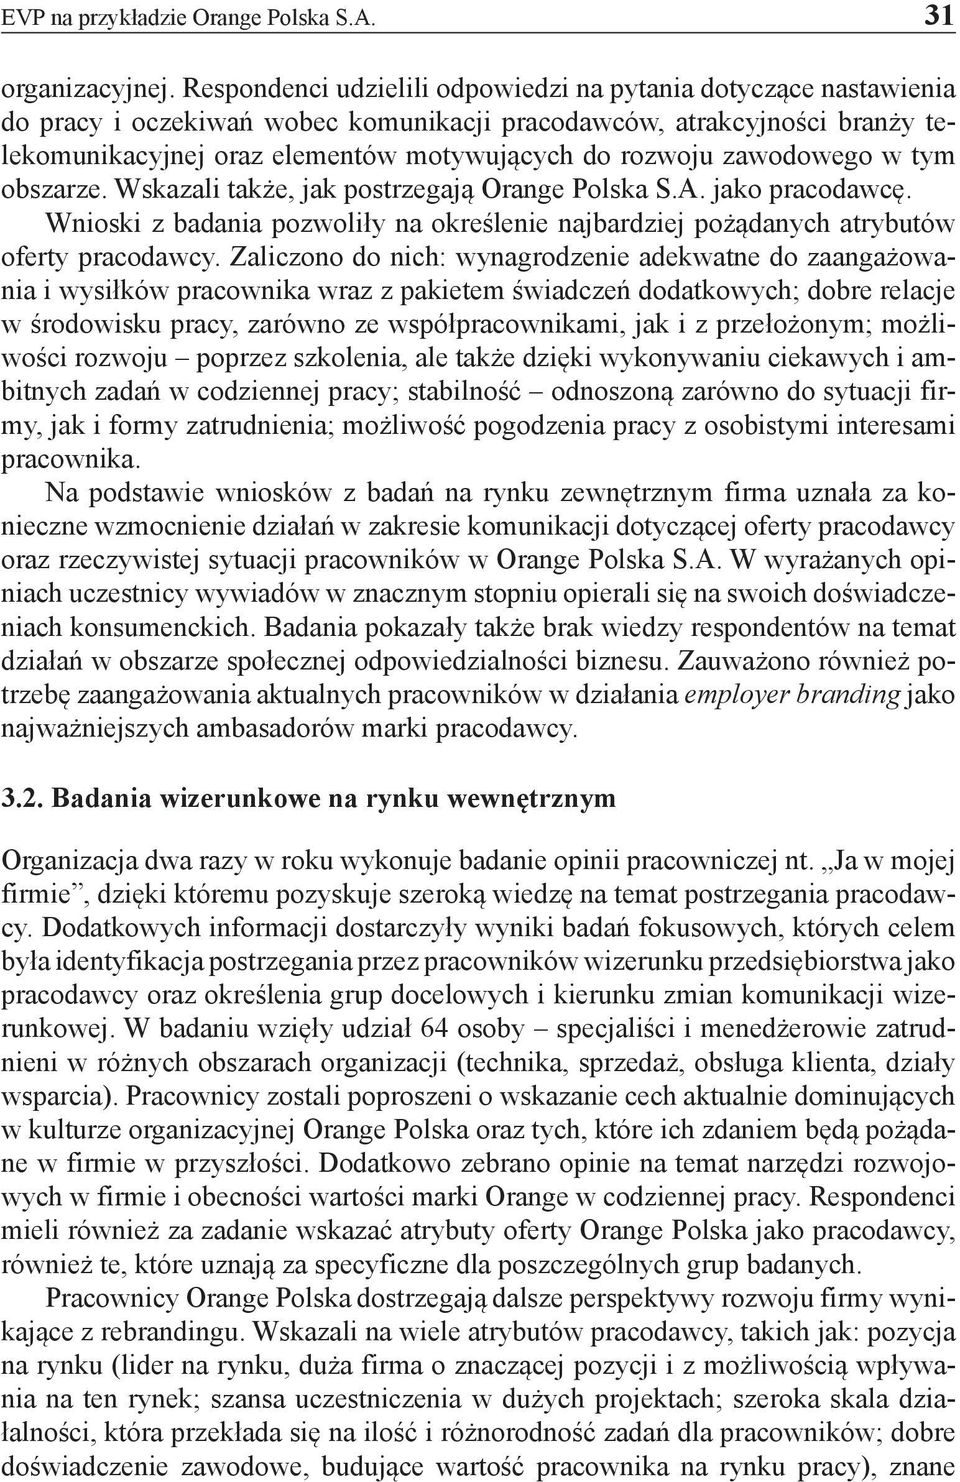 zawodowego w tym obszarze. Wskazali także, jak postrzegają Orange Polska S.A. jako pracodawcę. Wnioski z badania pozwoliły na określenie najbardziej pożądanych atrybutów oferty pracodawcy.